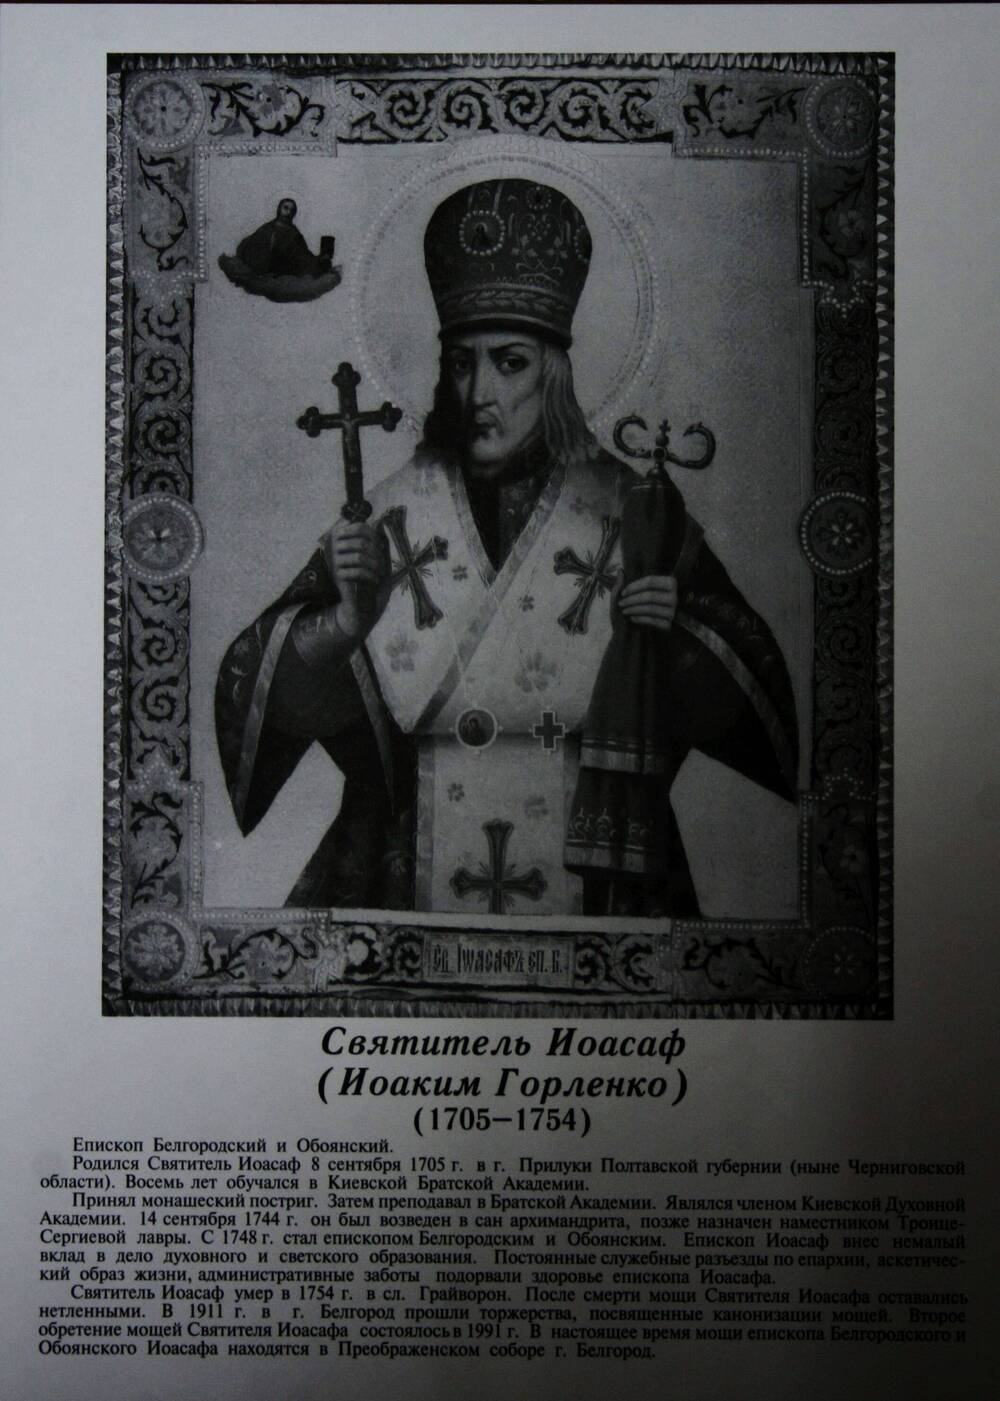 Плакат (фотопортрет) из комплекта Галерея славных имен Белгородчины. Святитель Иоасаф (Иоаким Горленко) (1705-1754).